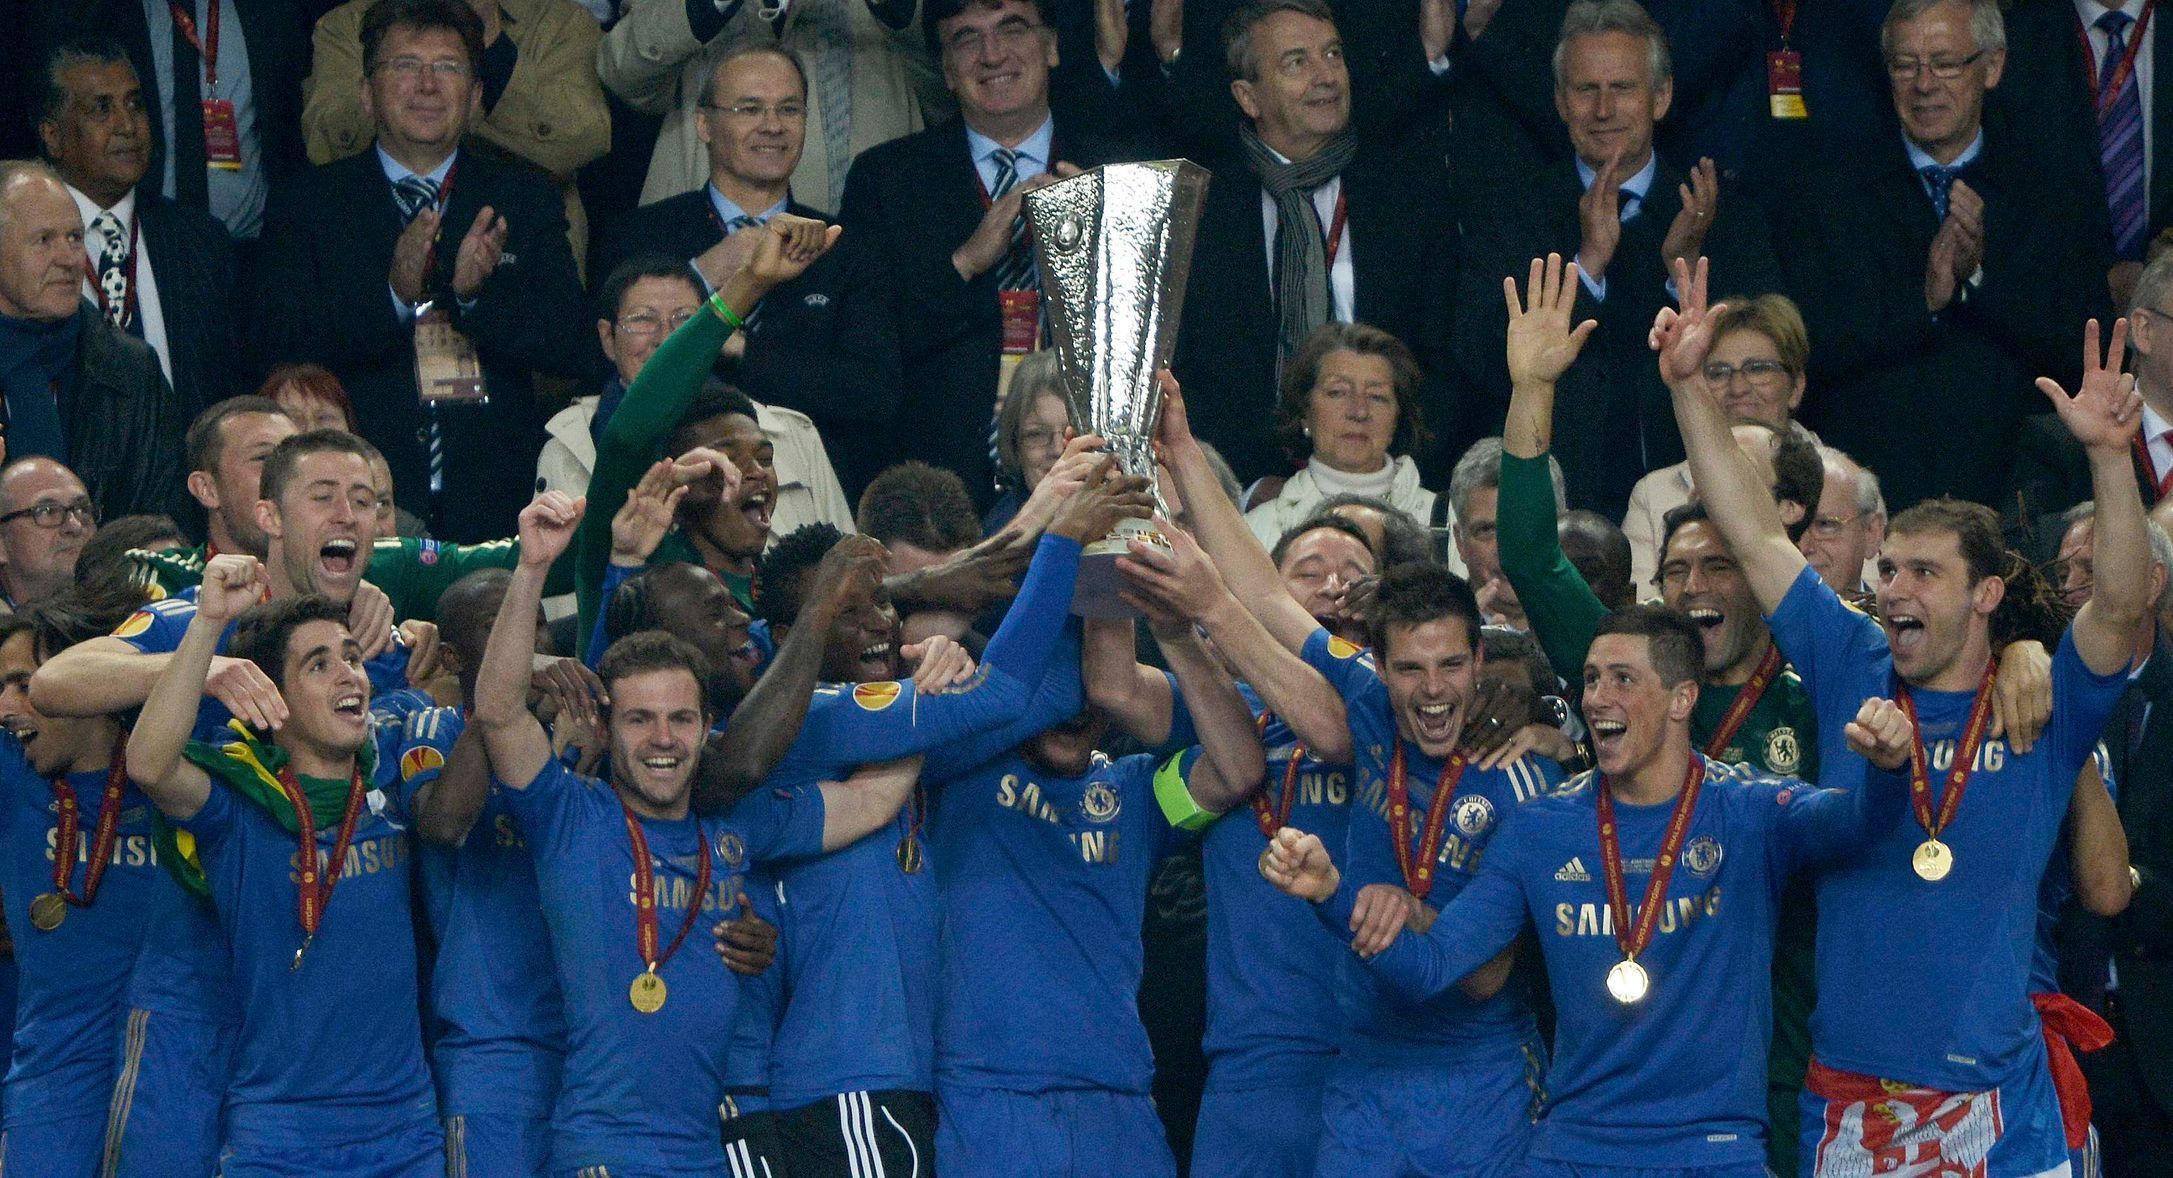 Fotbal, finále Evropské ligy, Chelsea - Benfica: Chelsea s vítěznou trofejjí